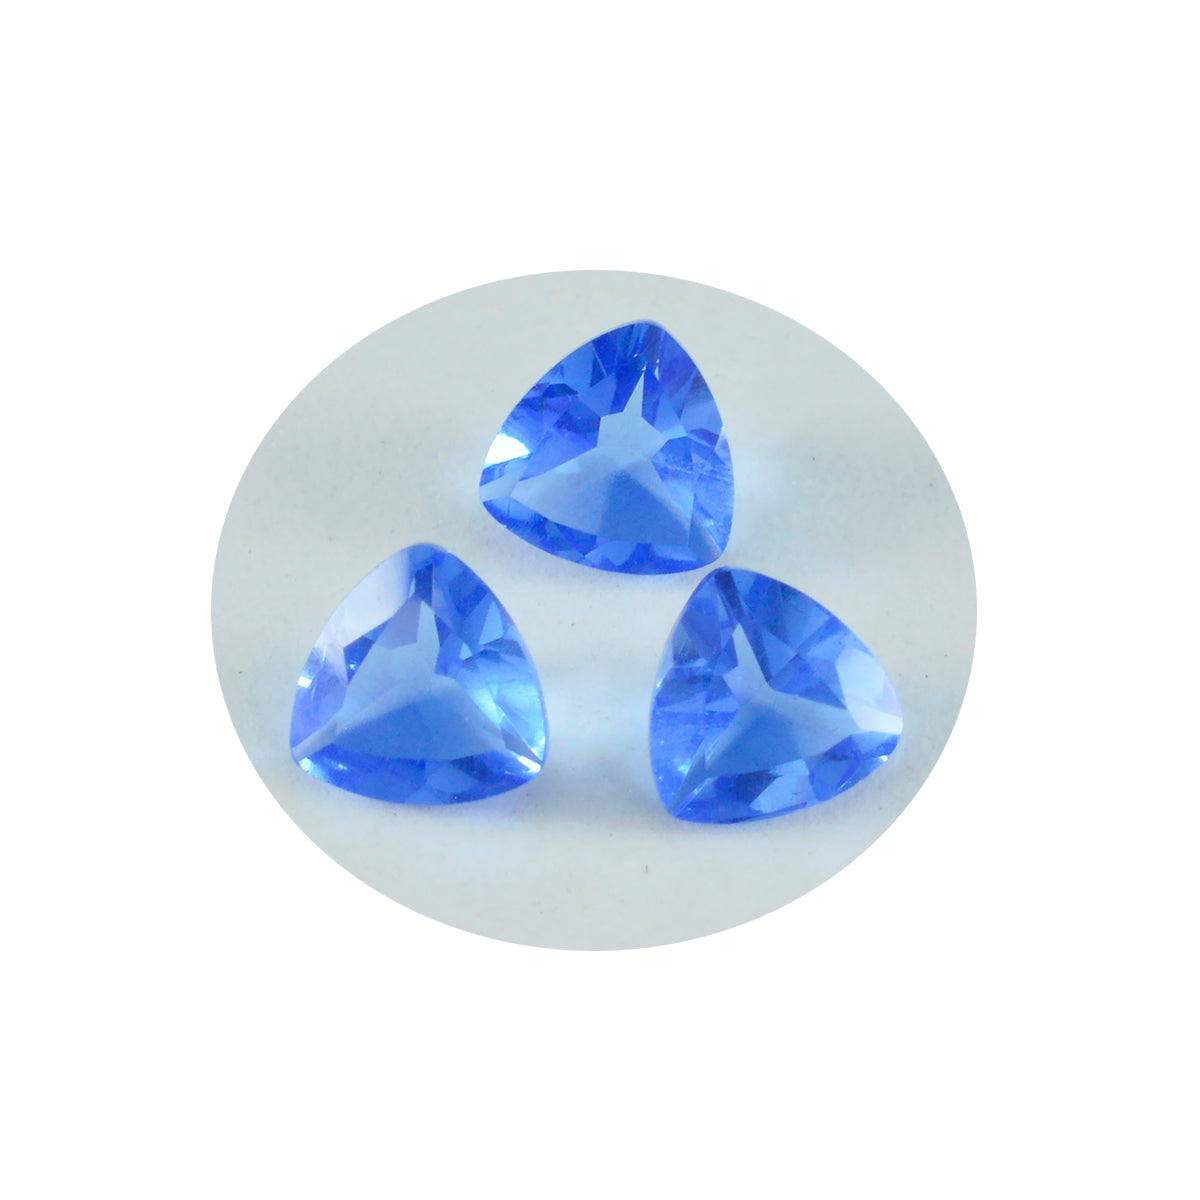 riyogems 1 шт. синий сапфир cz ограненный 14x14 мм форма триллиона милые качественные свободные драгоценные камни